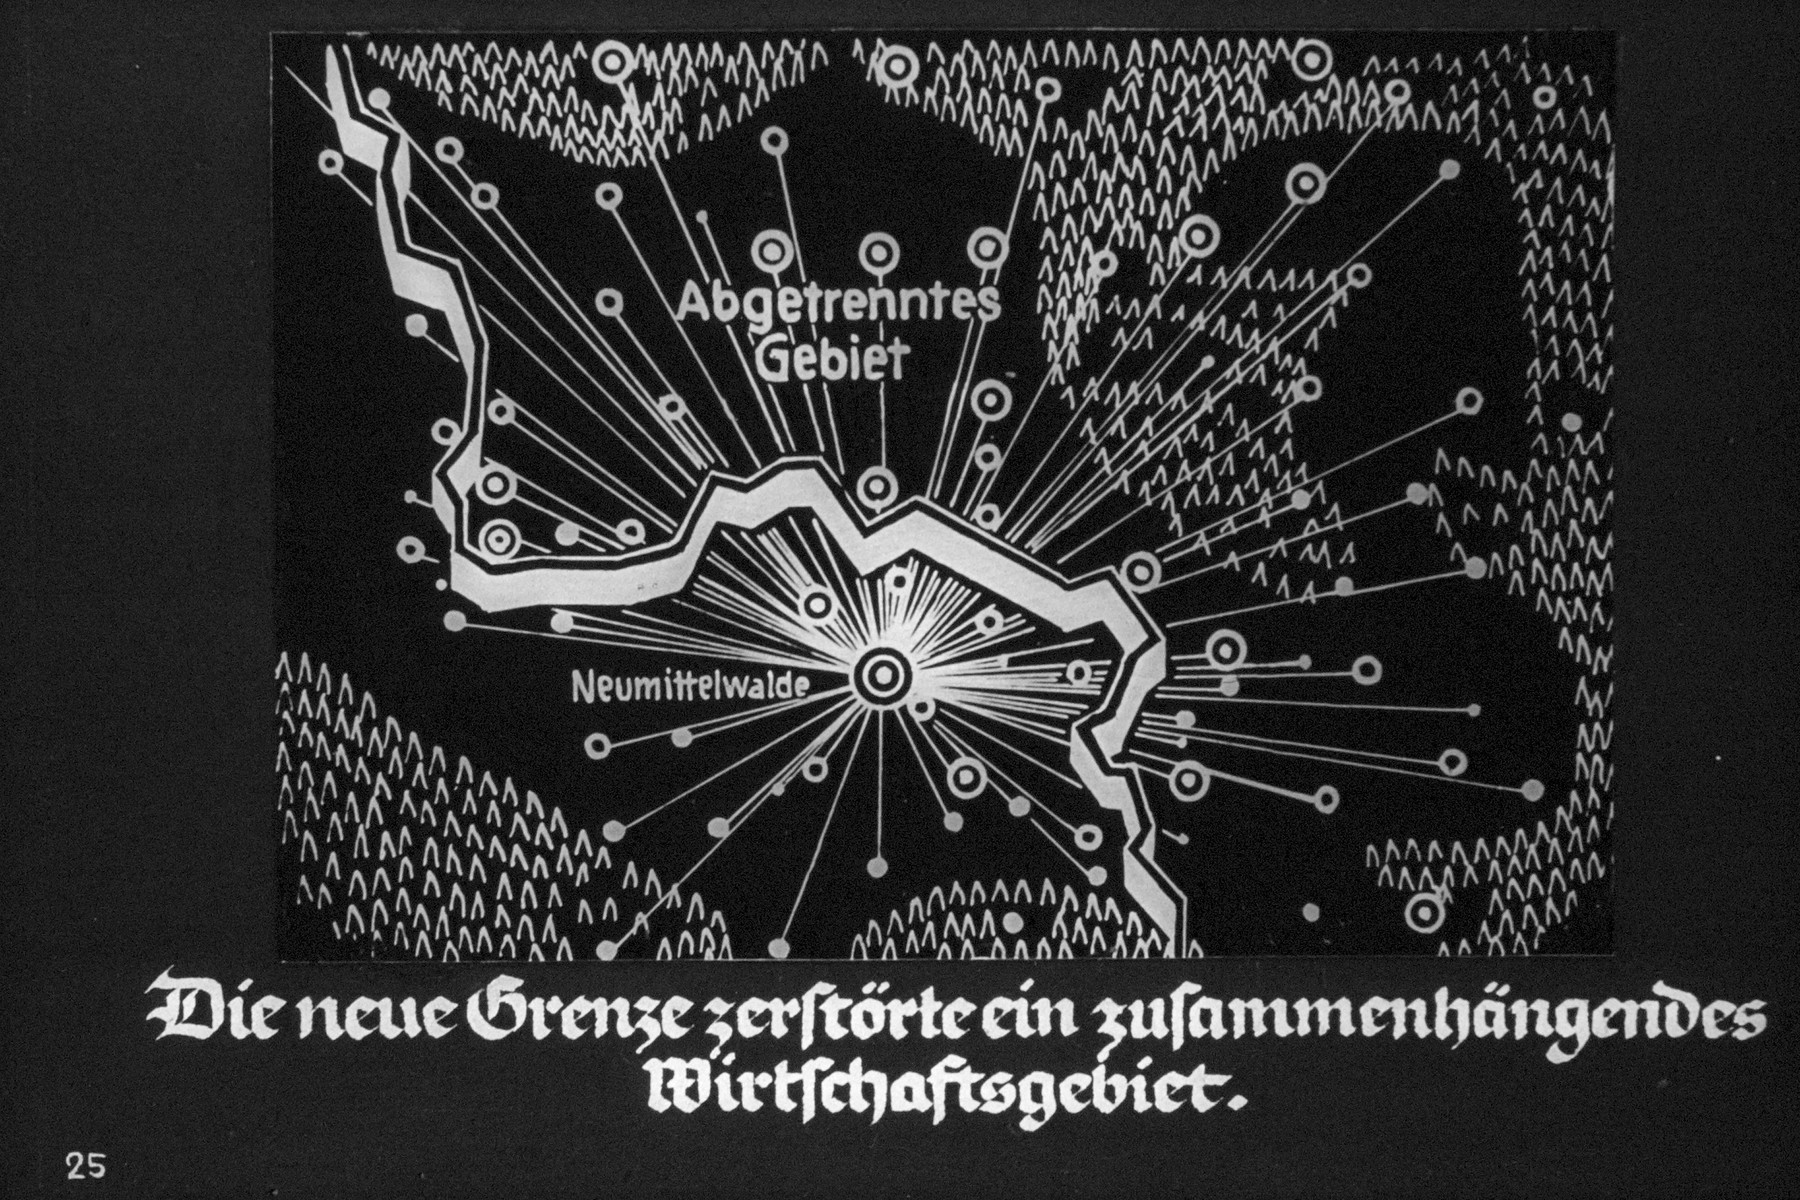 26th Nazi propaganda slide from Hitler Youth educational material titled "Border Land Upper Silesia."

Die neue Grenze zerstörte ein zusammenhängendes Wirtschaftsgebiet.
//
The new frontier destroyed a coherent economic territory.